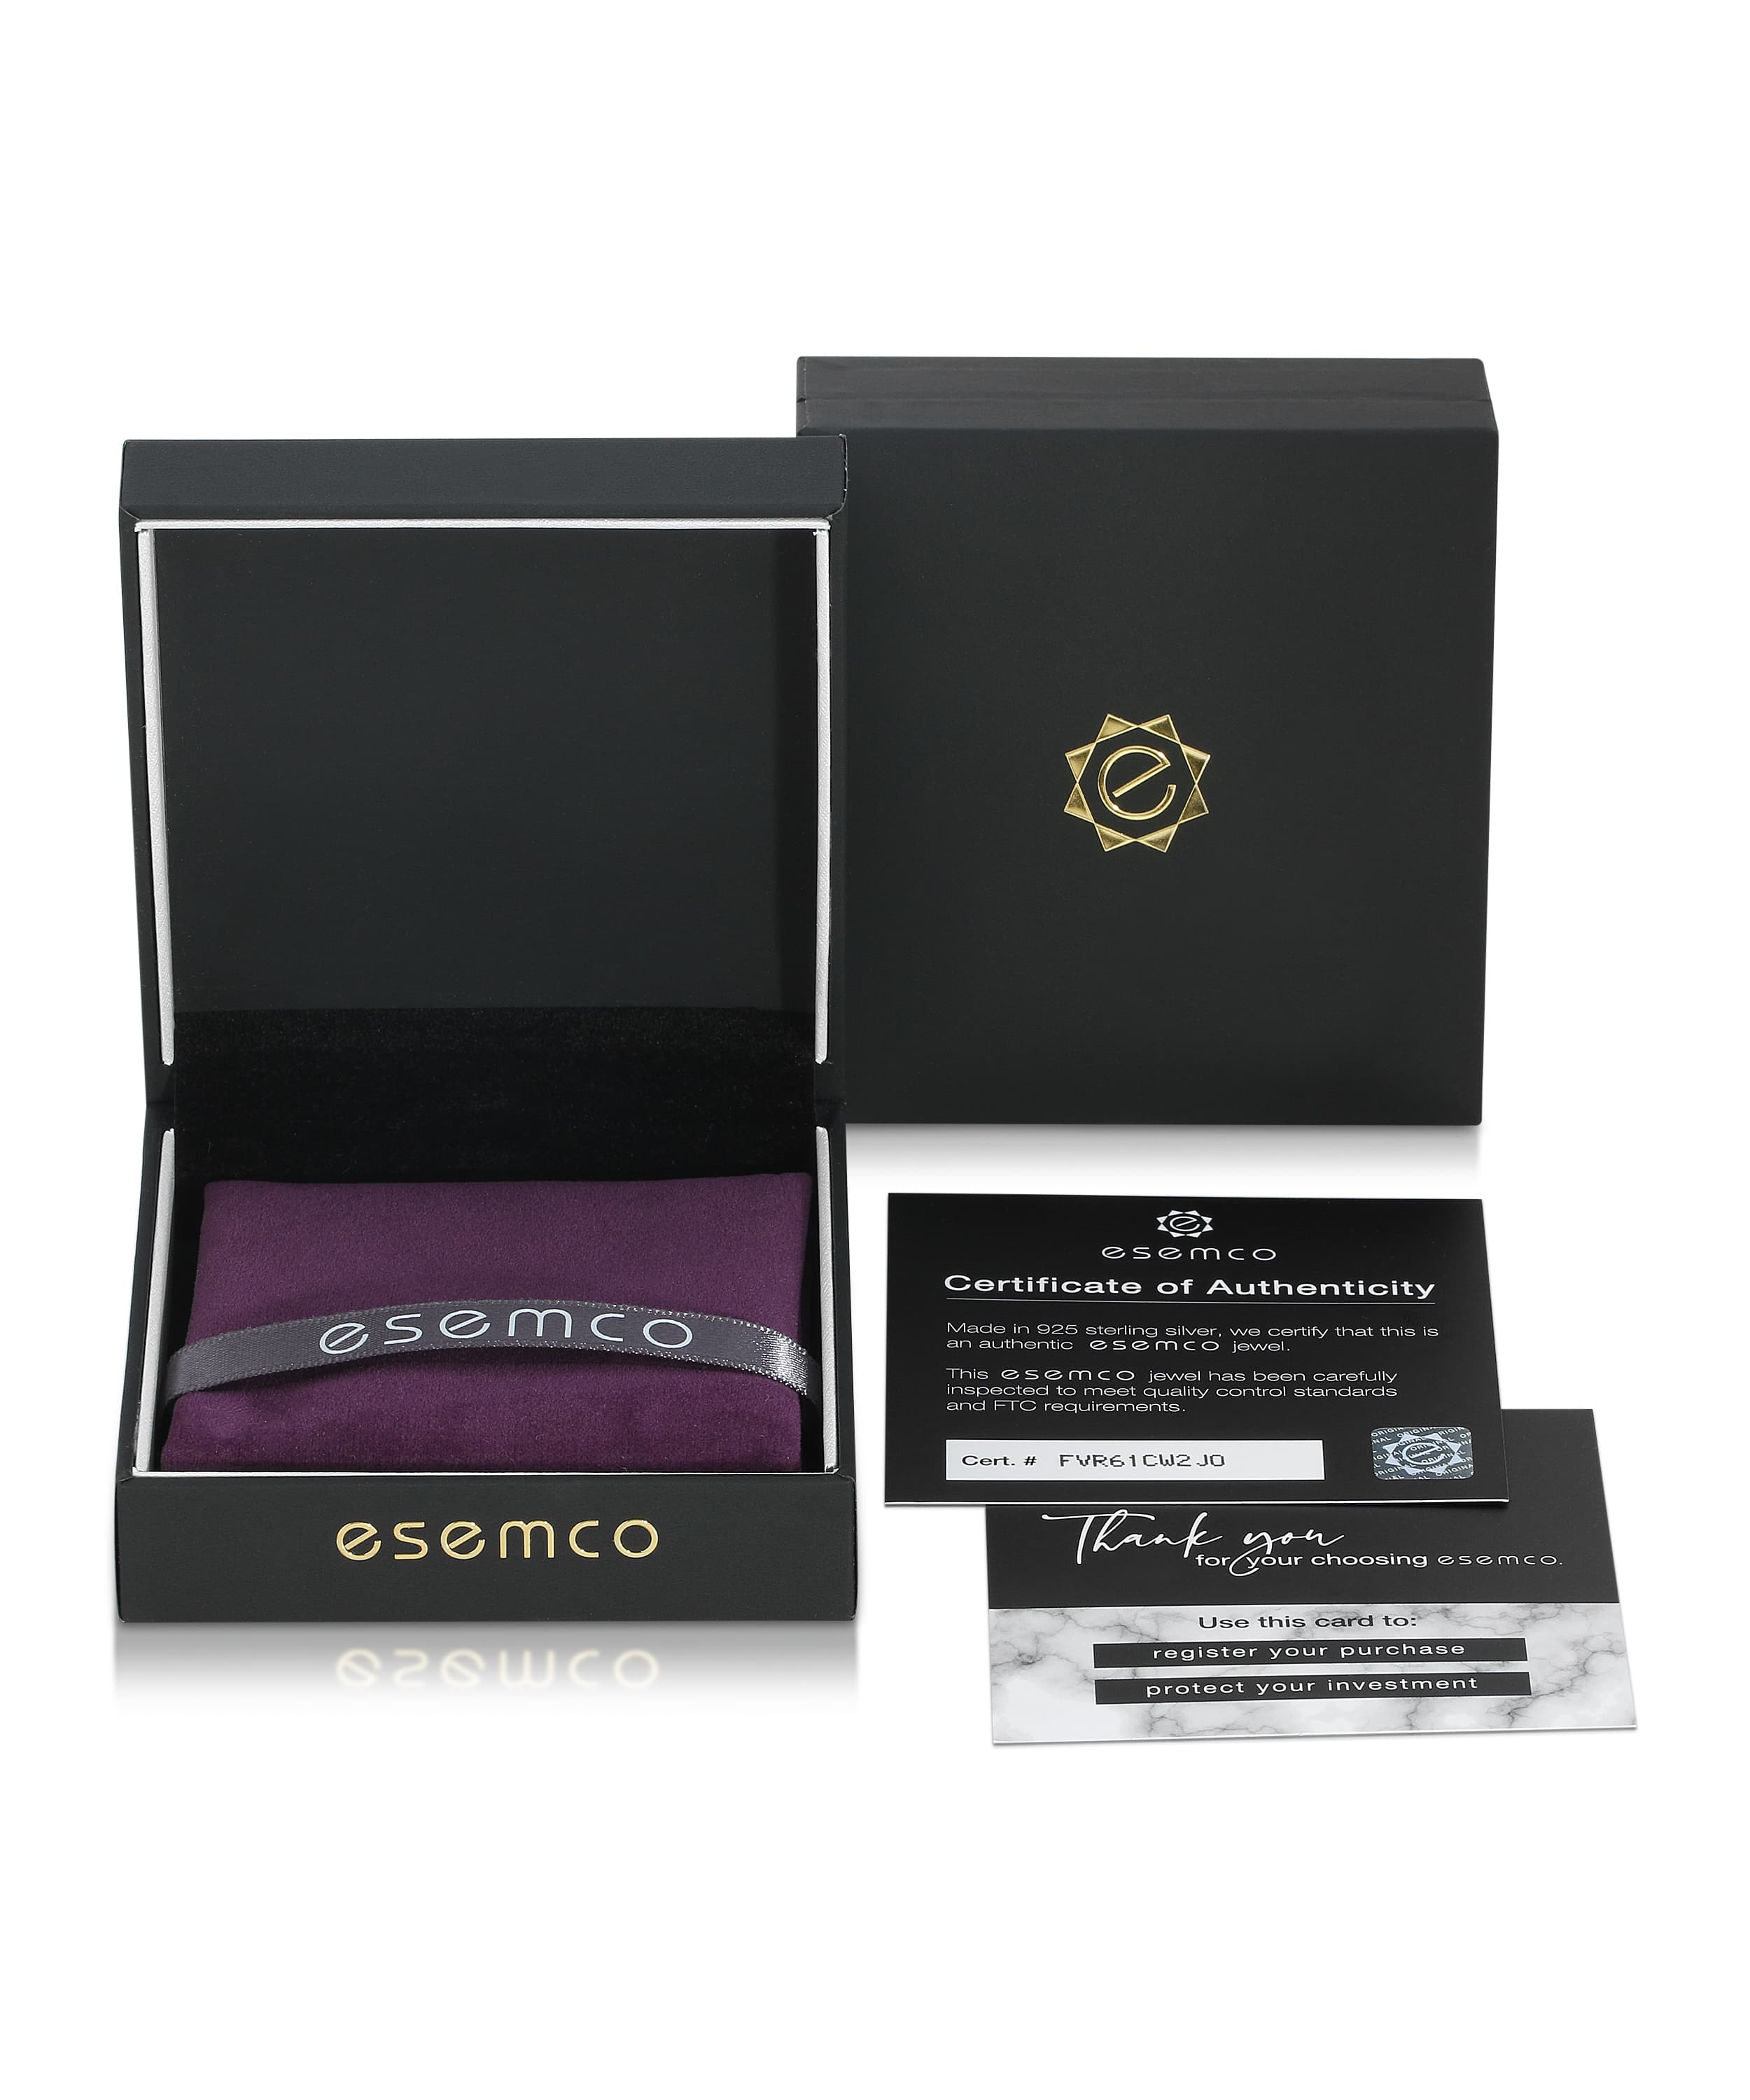 ESEMCO Diamond 18k White Gold Letter J Initial Open Ring View 4